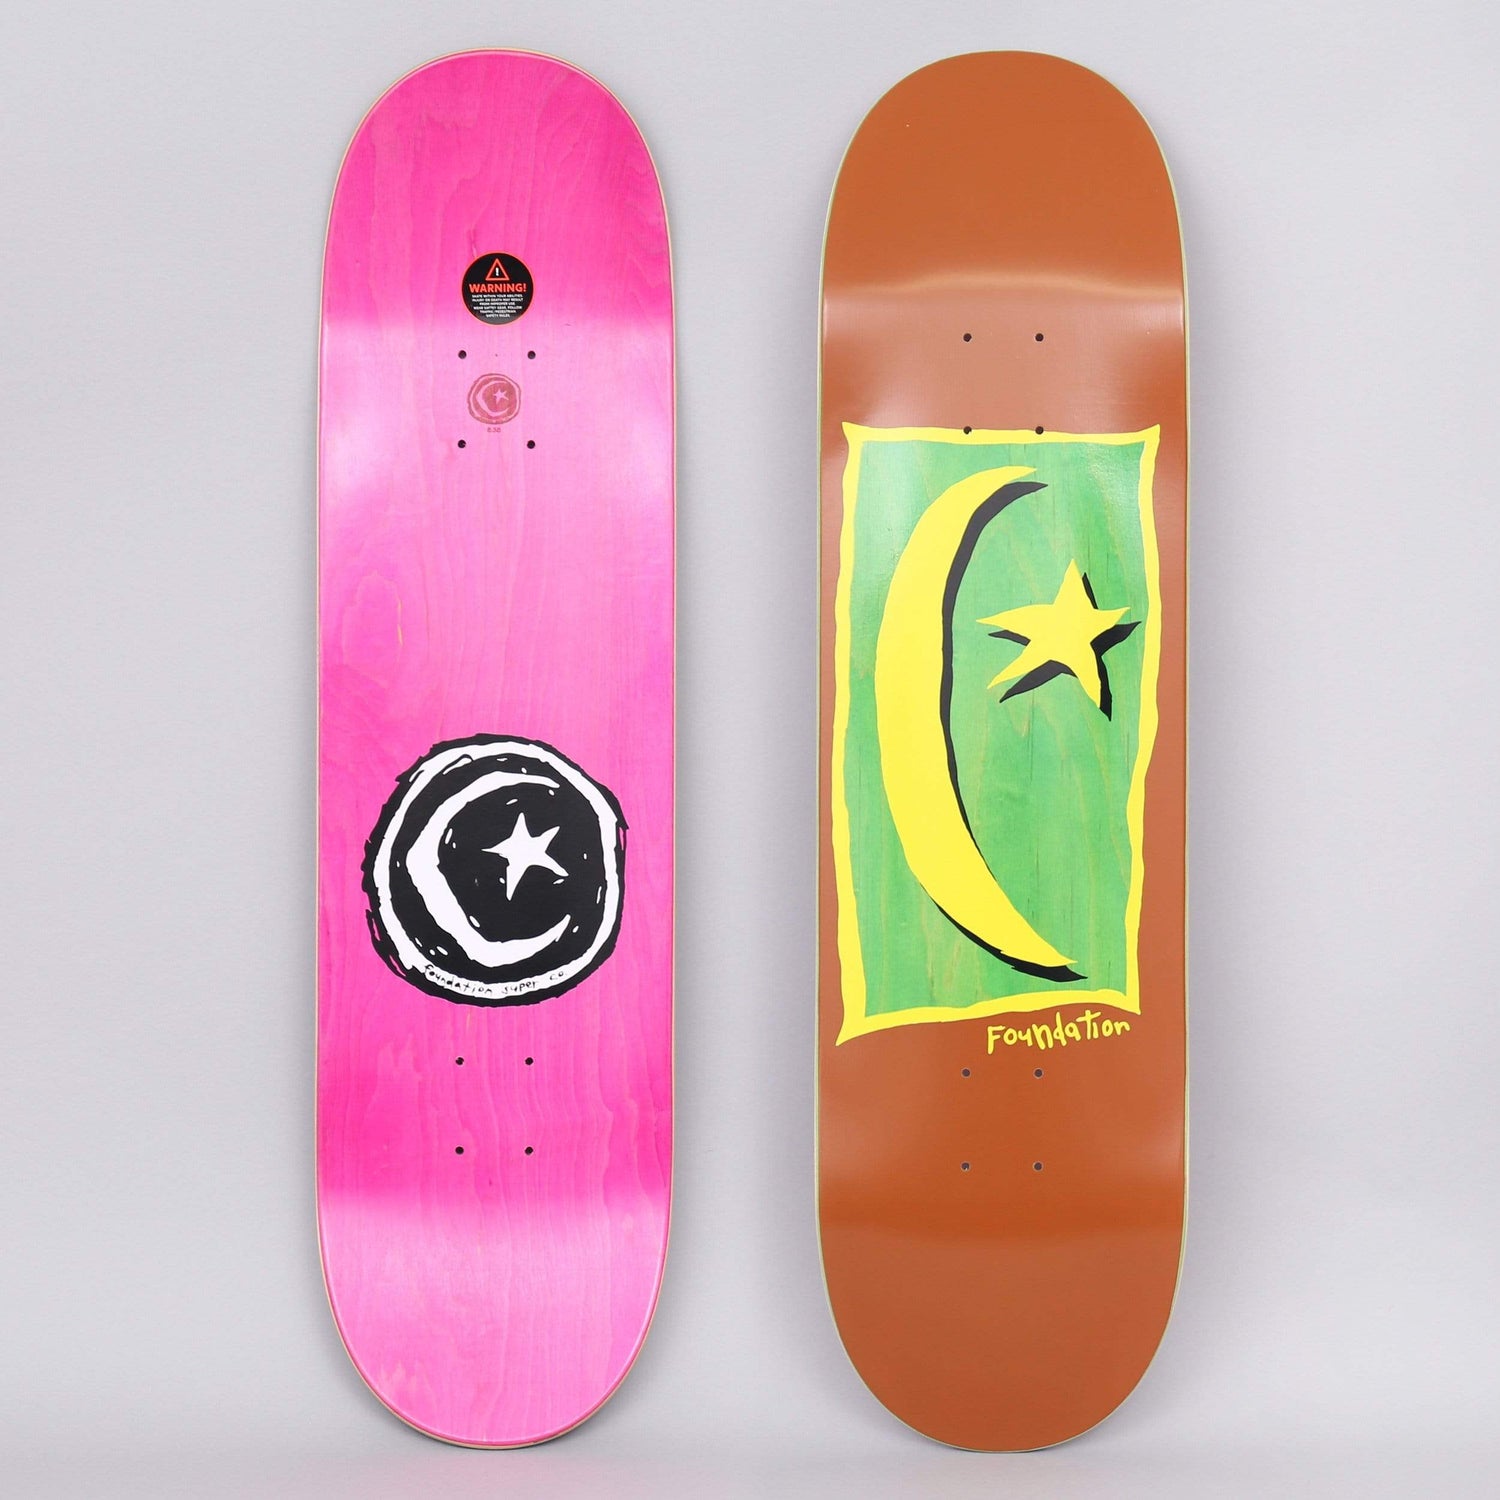 Foundation Skateboards